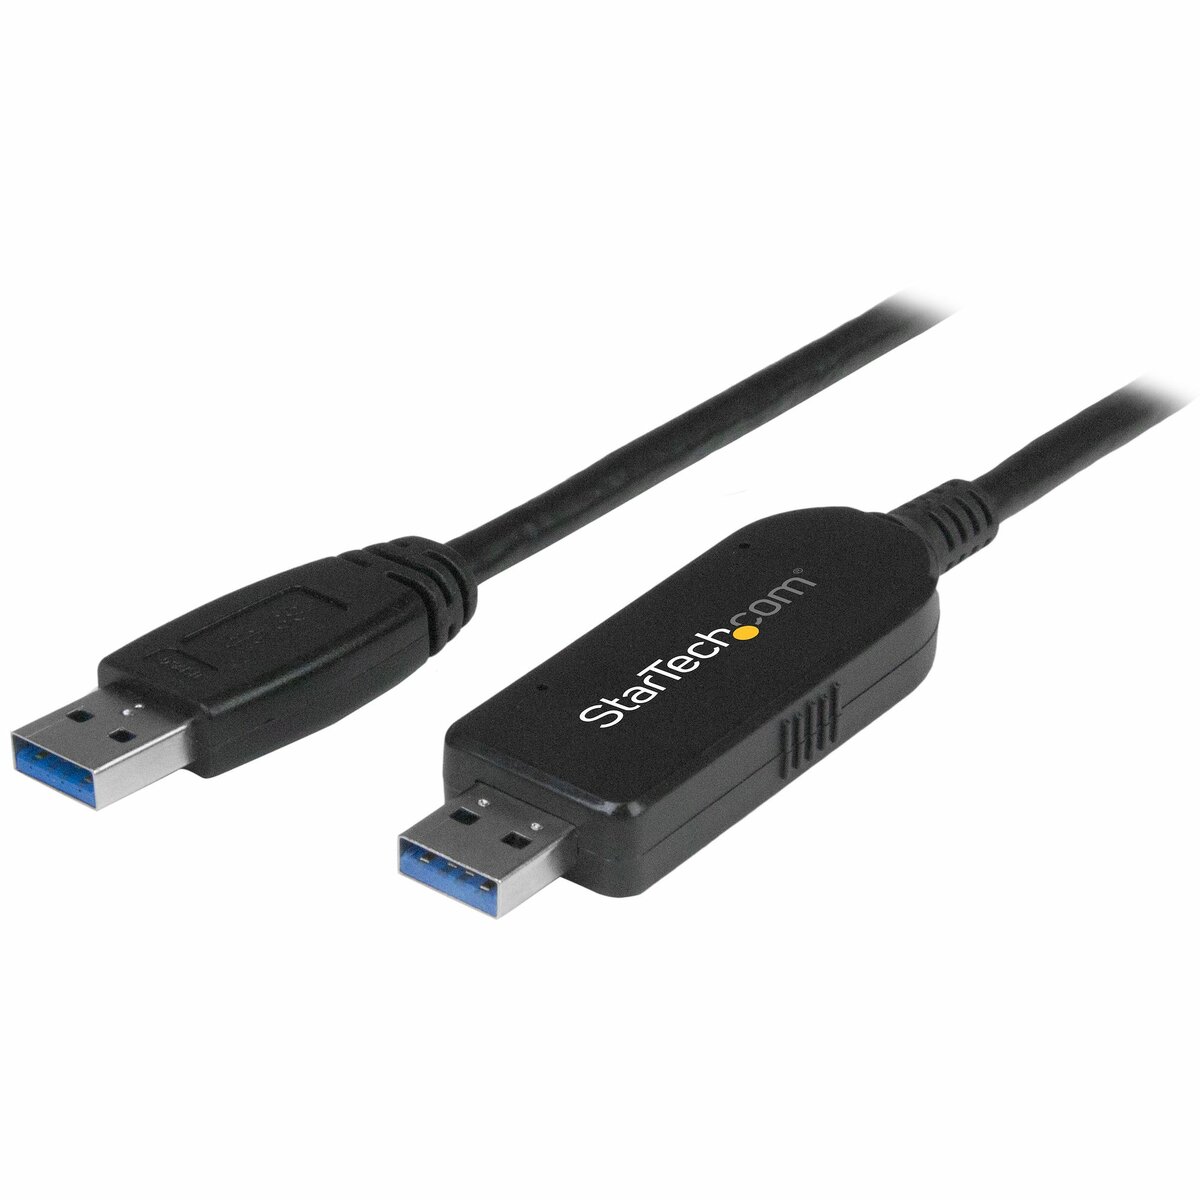 Câble pour disque dur externe USB 3.0 ALL WHAT OFFICE NEEDS